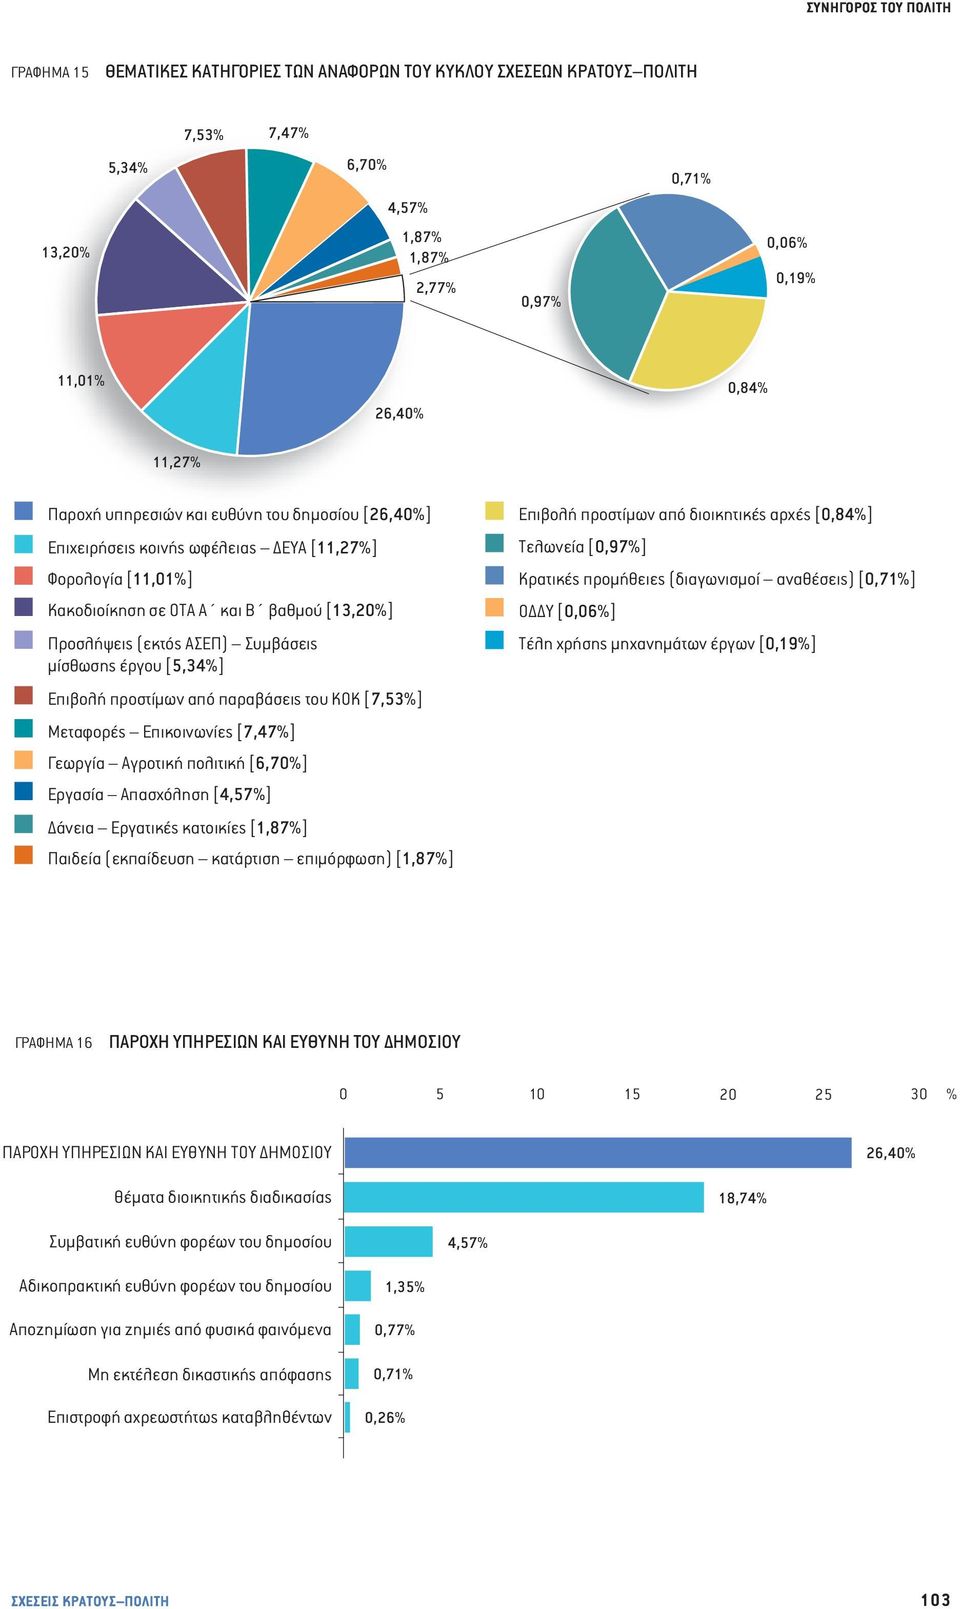 [5,34%] Επιβολή προστίμων από παραβάσεις του ΚΟΚ [7,53%] Μεταφορές Επικοινωνίες [7,47%] Γεωργία Αγροτική πολιτική [6,70%] Εργασία Απασχόληση [4,57%] Δάνεια Εργατικές κατοικίες [1,87%] Παιδεία